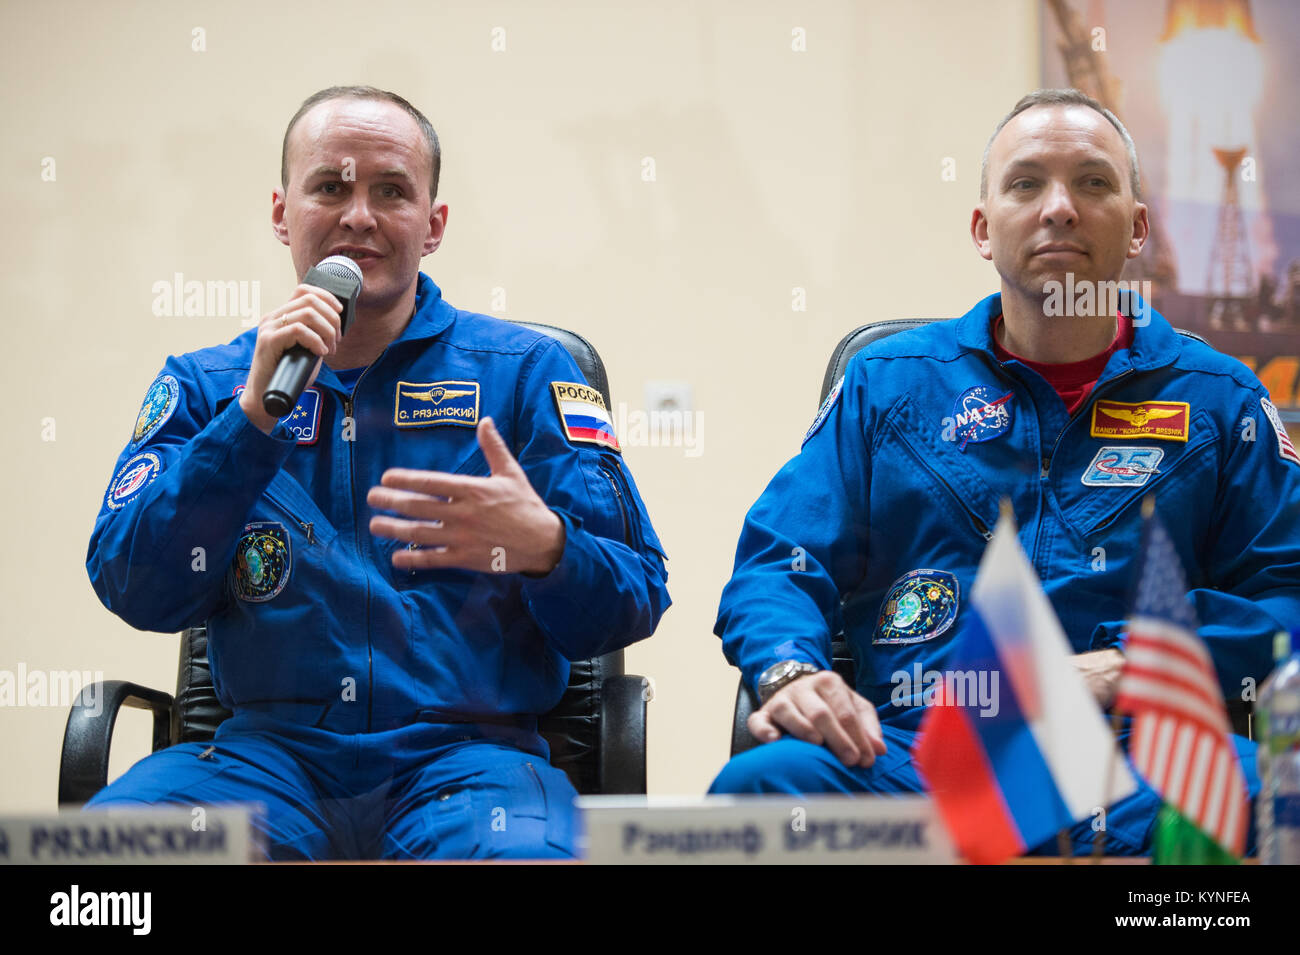 Expedition 51 sauvegarder membre d'équipage, commandant de Soyouz Sergey Ryazanskiy de Roscosmos, gauche, répond à une question au cours d'une conférence de presse tenue à l'hôtel cosmonaute à Baïkonour, Kazakhstan, le Mercredi, Avril 19, 2017. Il est vu avec l'équipage Expedition 51 sauvegarder Randy Bresnik mate de la NASA. L'équipage Expedition 51 premier lancement est prévu pour le 20 avril du cosmodrome de Baïkonour. Crédit photo : NASA/Aubrey Gemignani) Banque D'Images